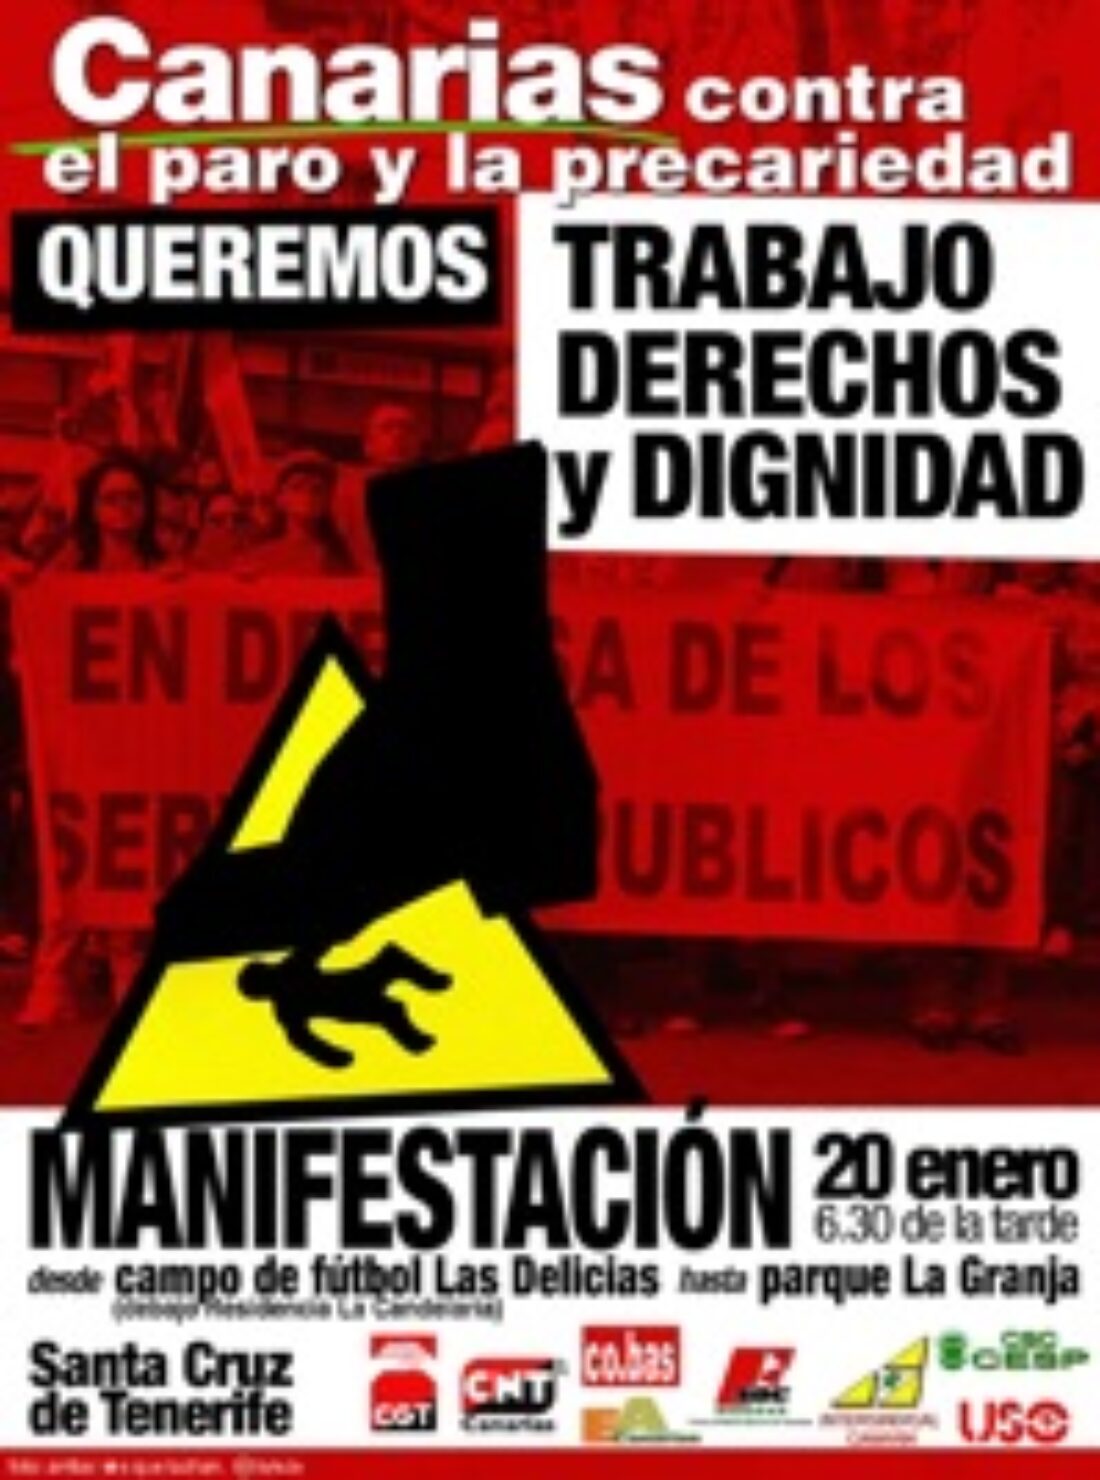 20 enero, Tenerife : Manifestación «Canarias contra el paro y la precariedad»